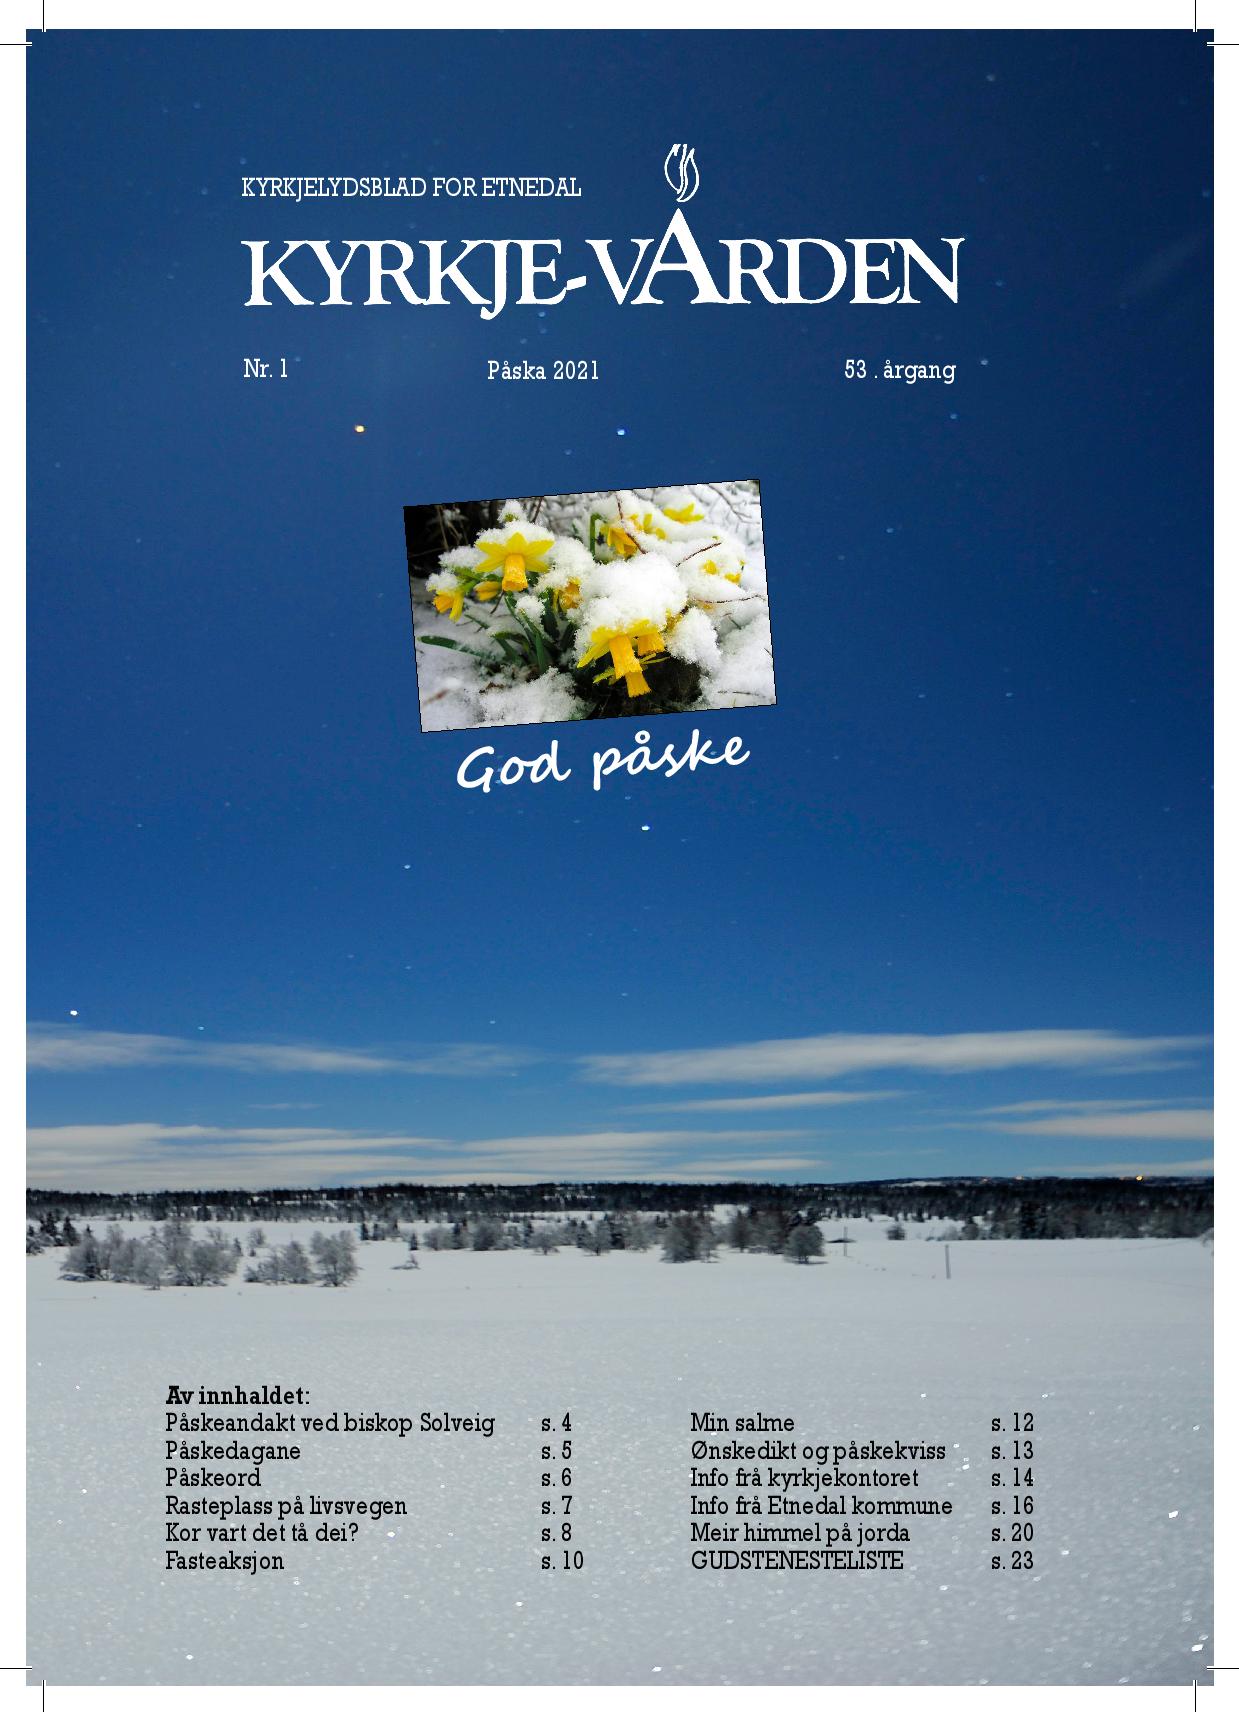 Kyrkjevarden Etnedal Påsken 2021 v4-1 (2)-page-001.jpg